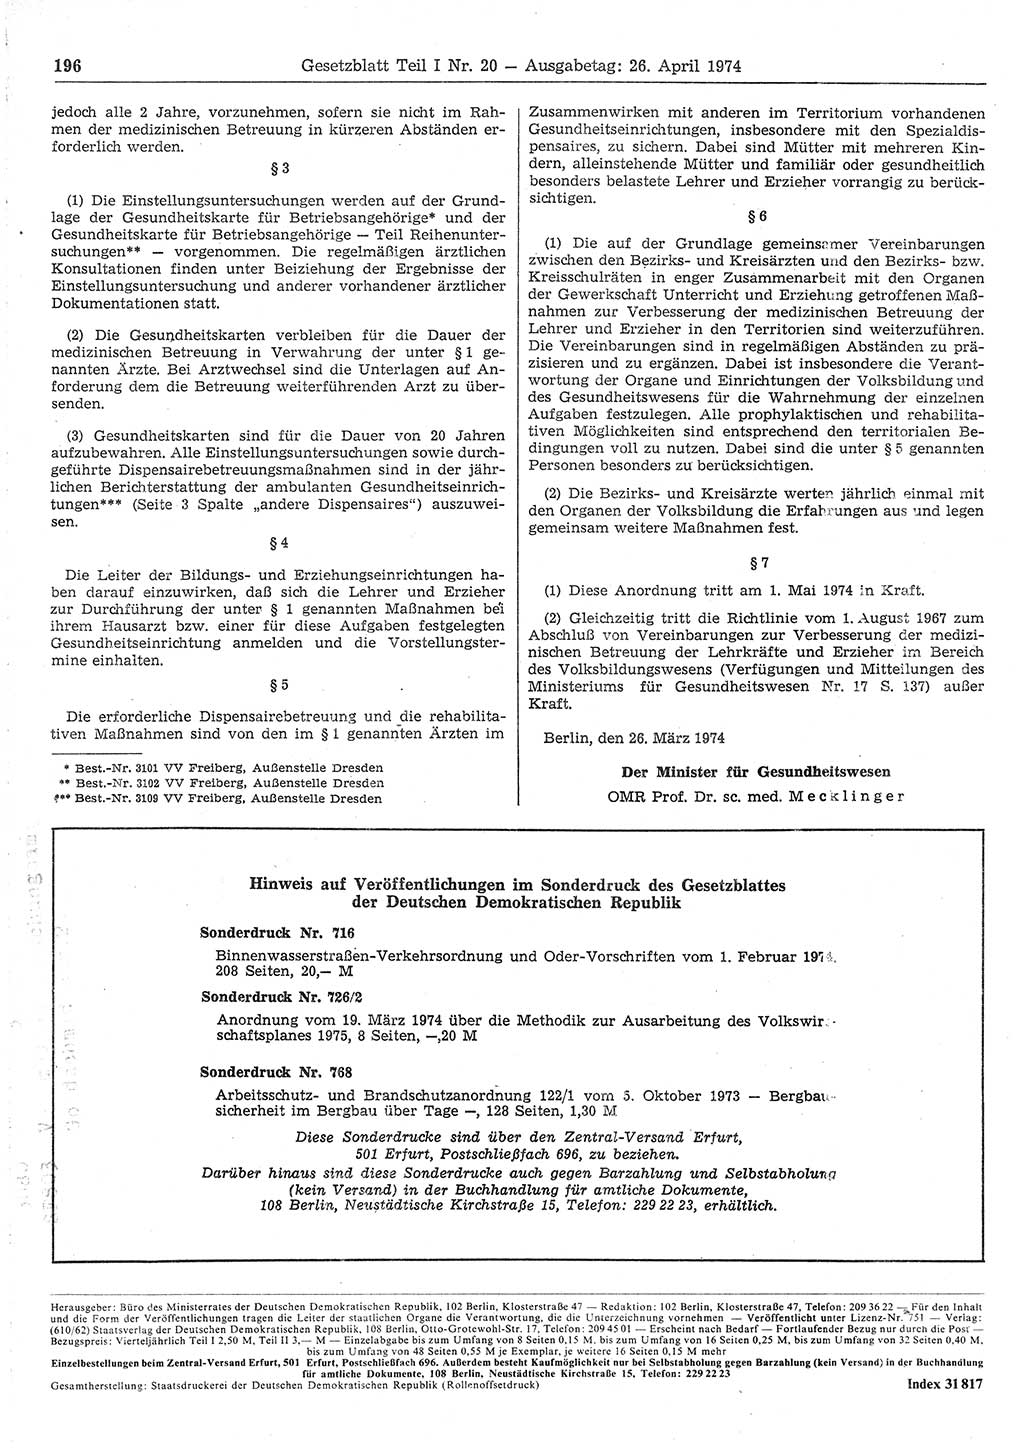 Gesetzblatt (GBl.) der Deutschen Demokratischen Republik (DDR) Teil Ⅰ 1974, Seite 196 (GBl. DDR Ⅰ 1974, S. 196)